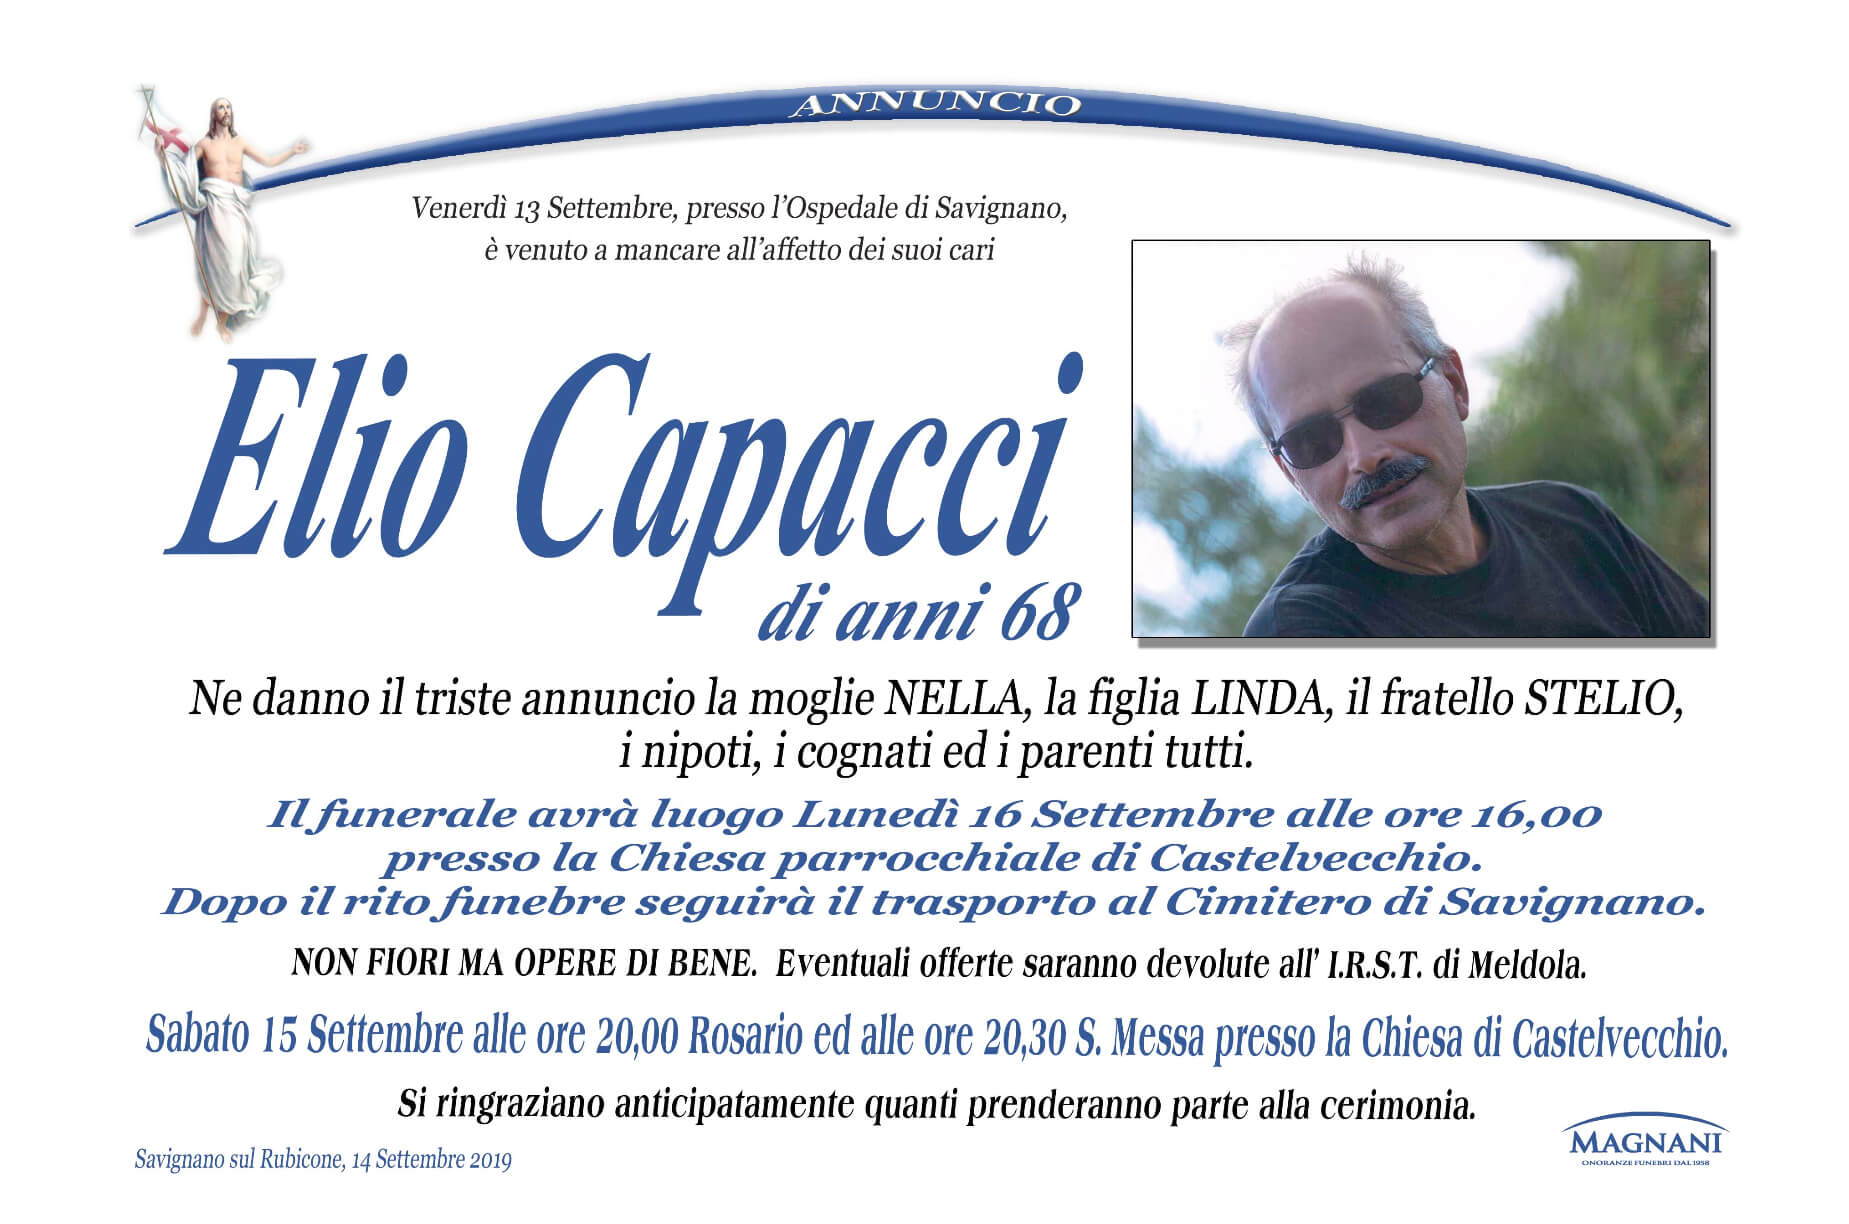 Elio Capacci